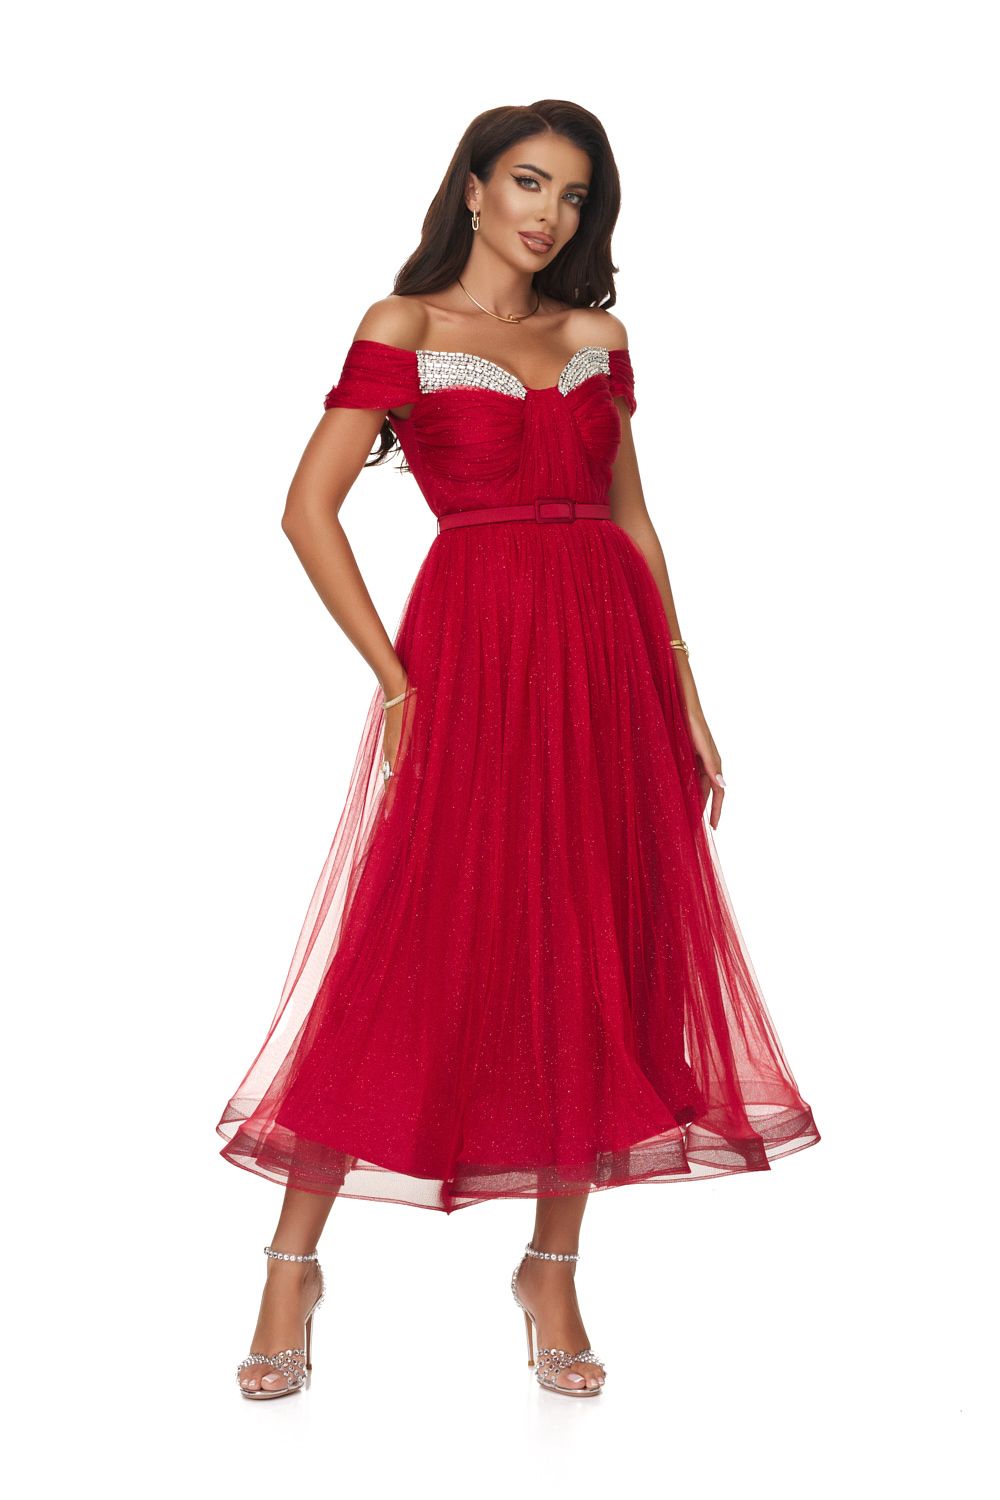 Long red dress for women Tifla Bogas